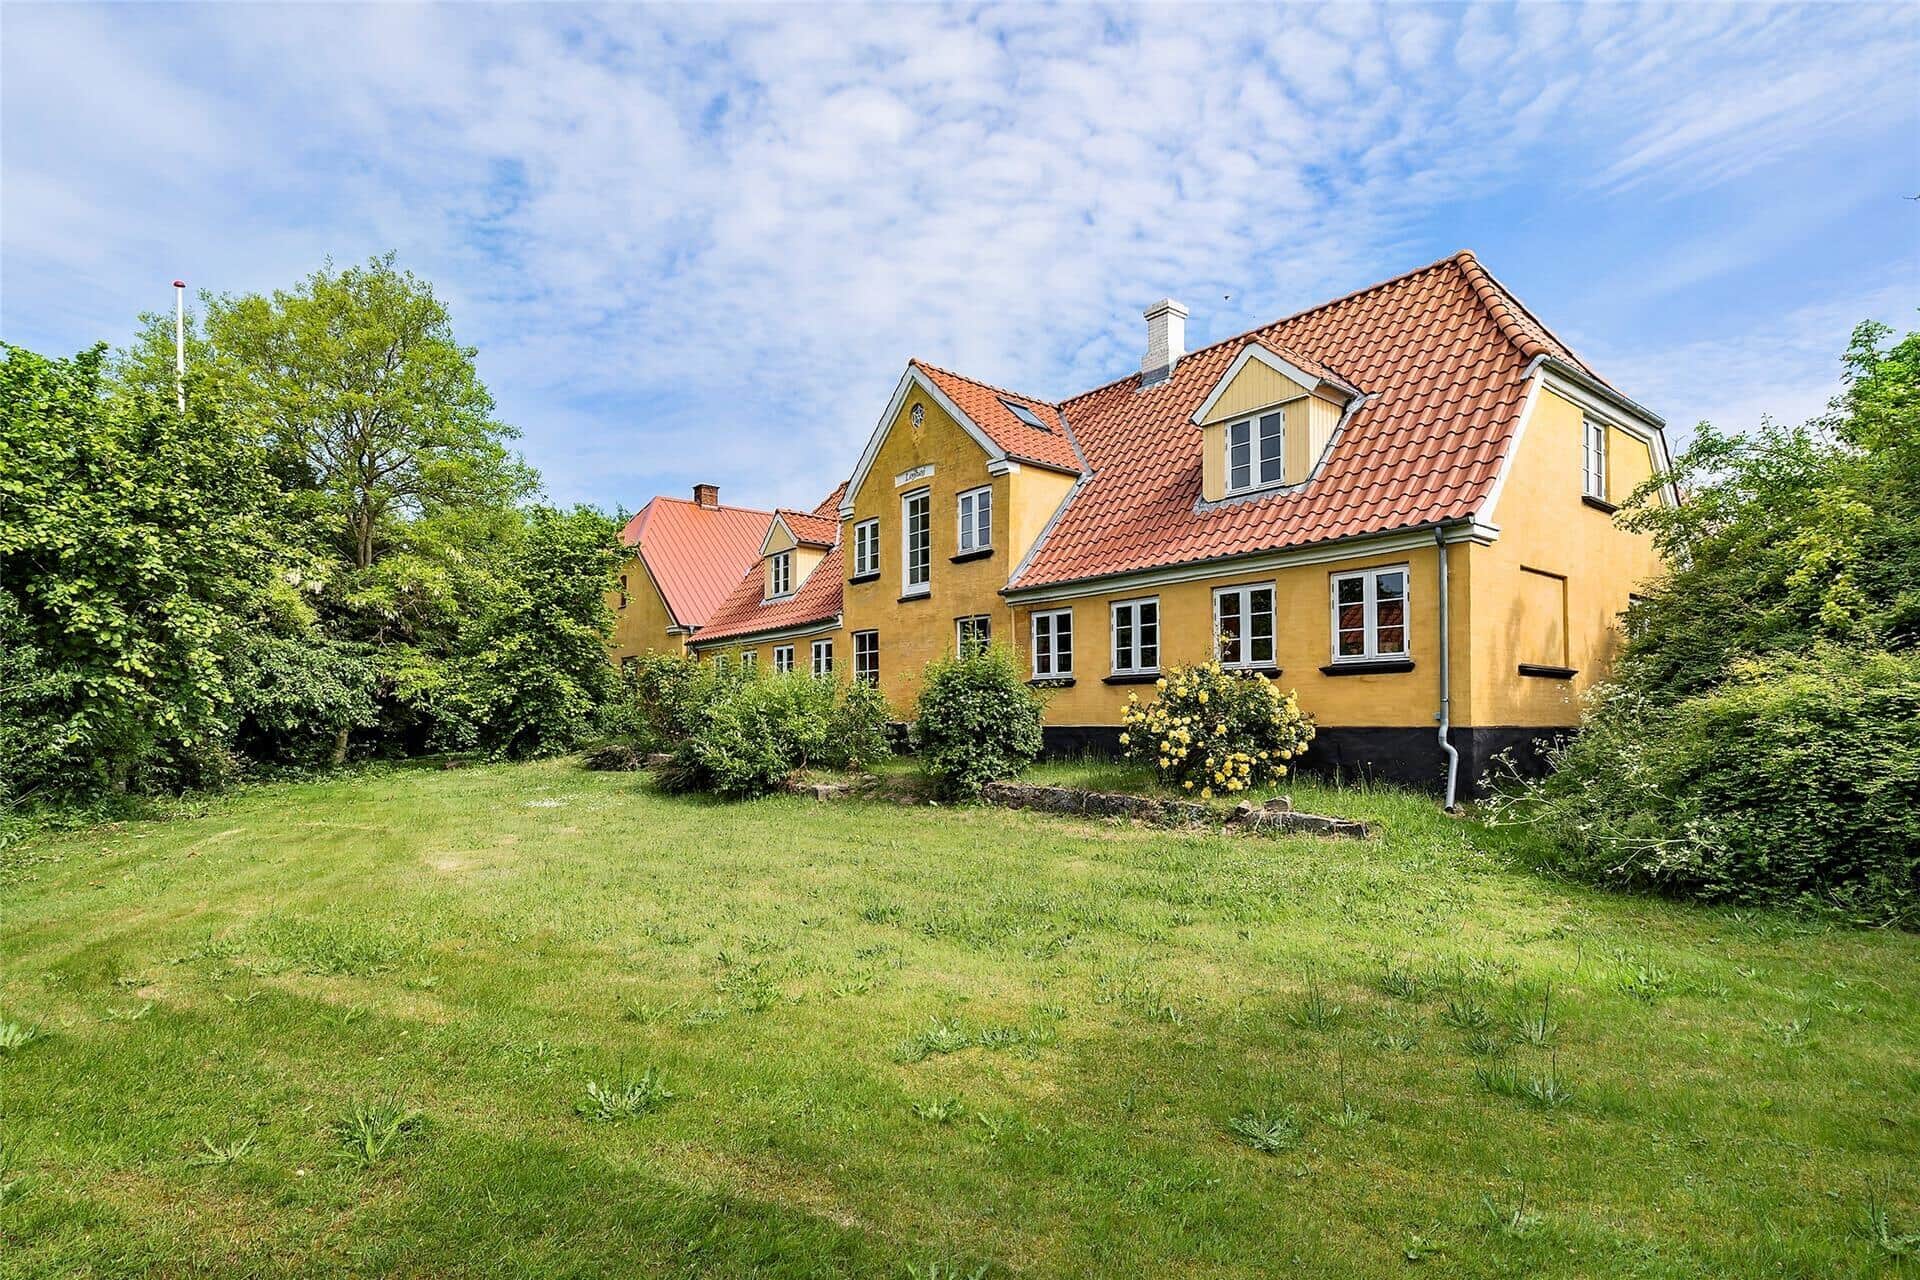 Image 0-3 Holiday-home M70423, Bregninge Landevej 6, DK - 5970 Ærøskøbing